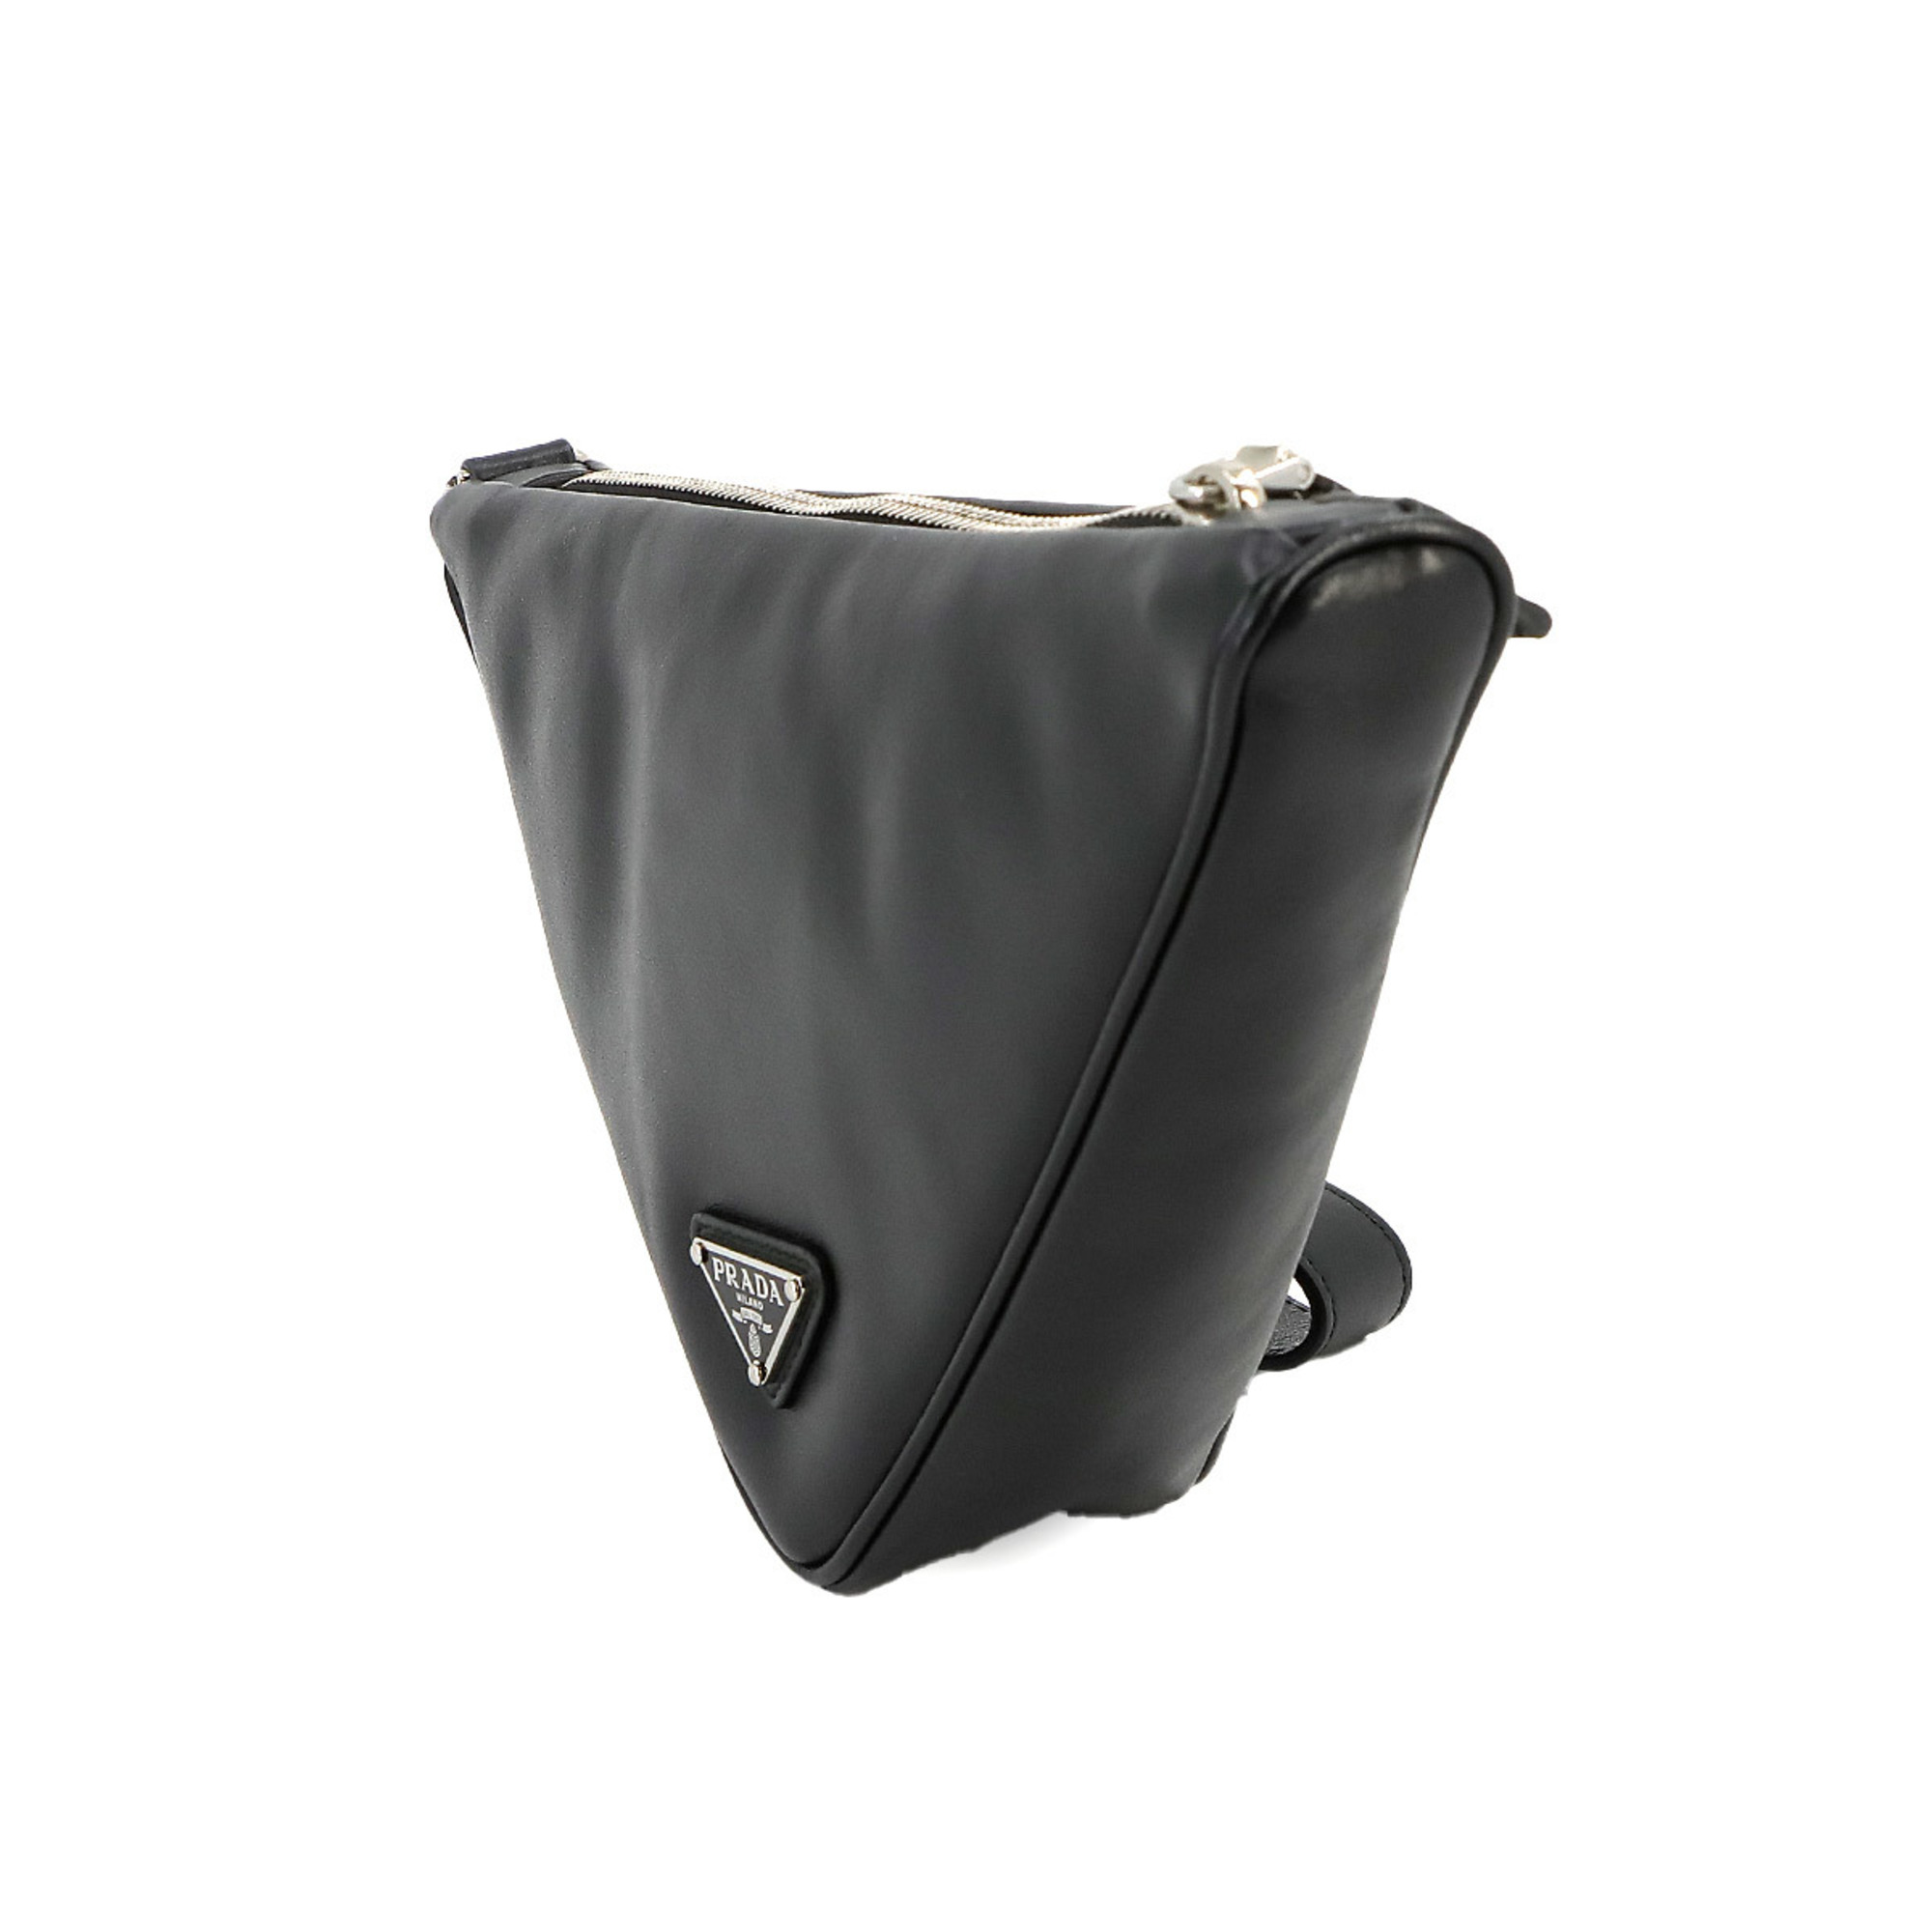 PRADA Triangle Clutch Bag Leather Nero Black 1NE039